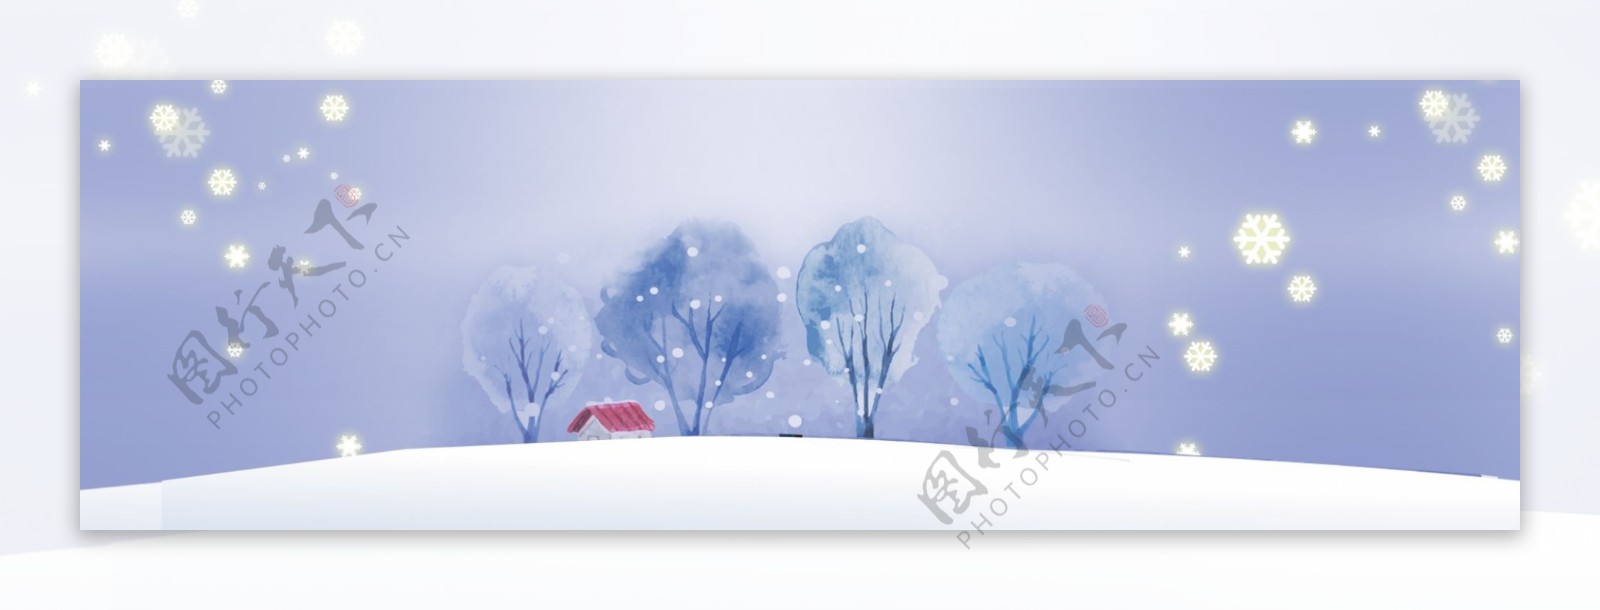 冬季雪地风景banner背景